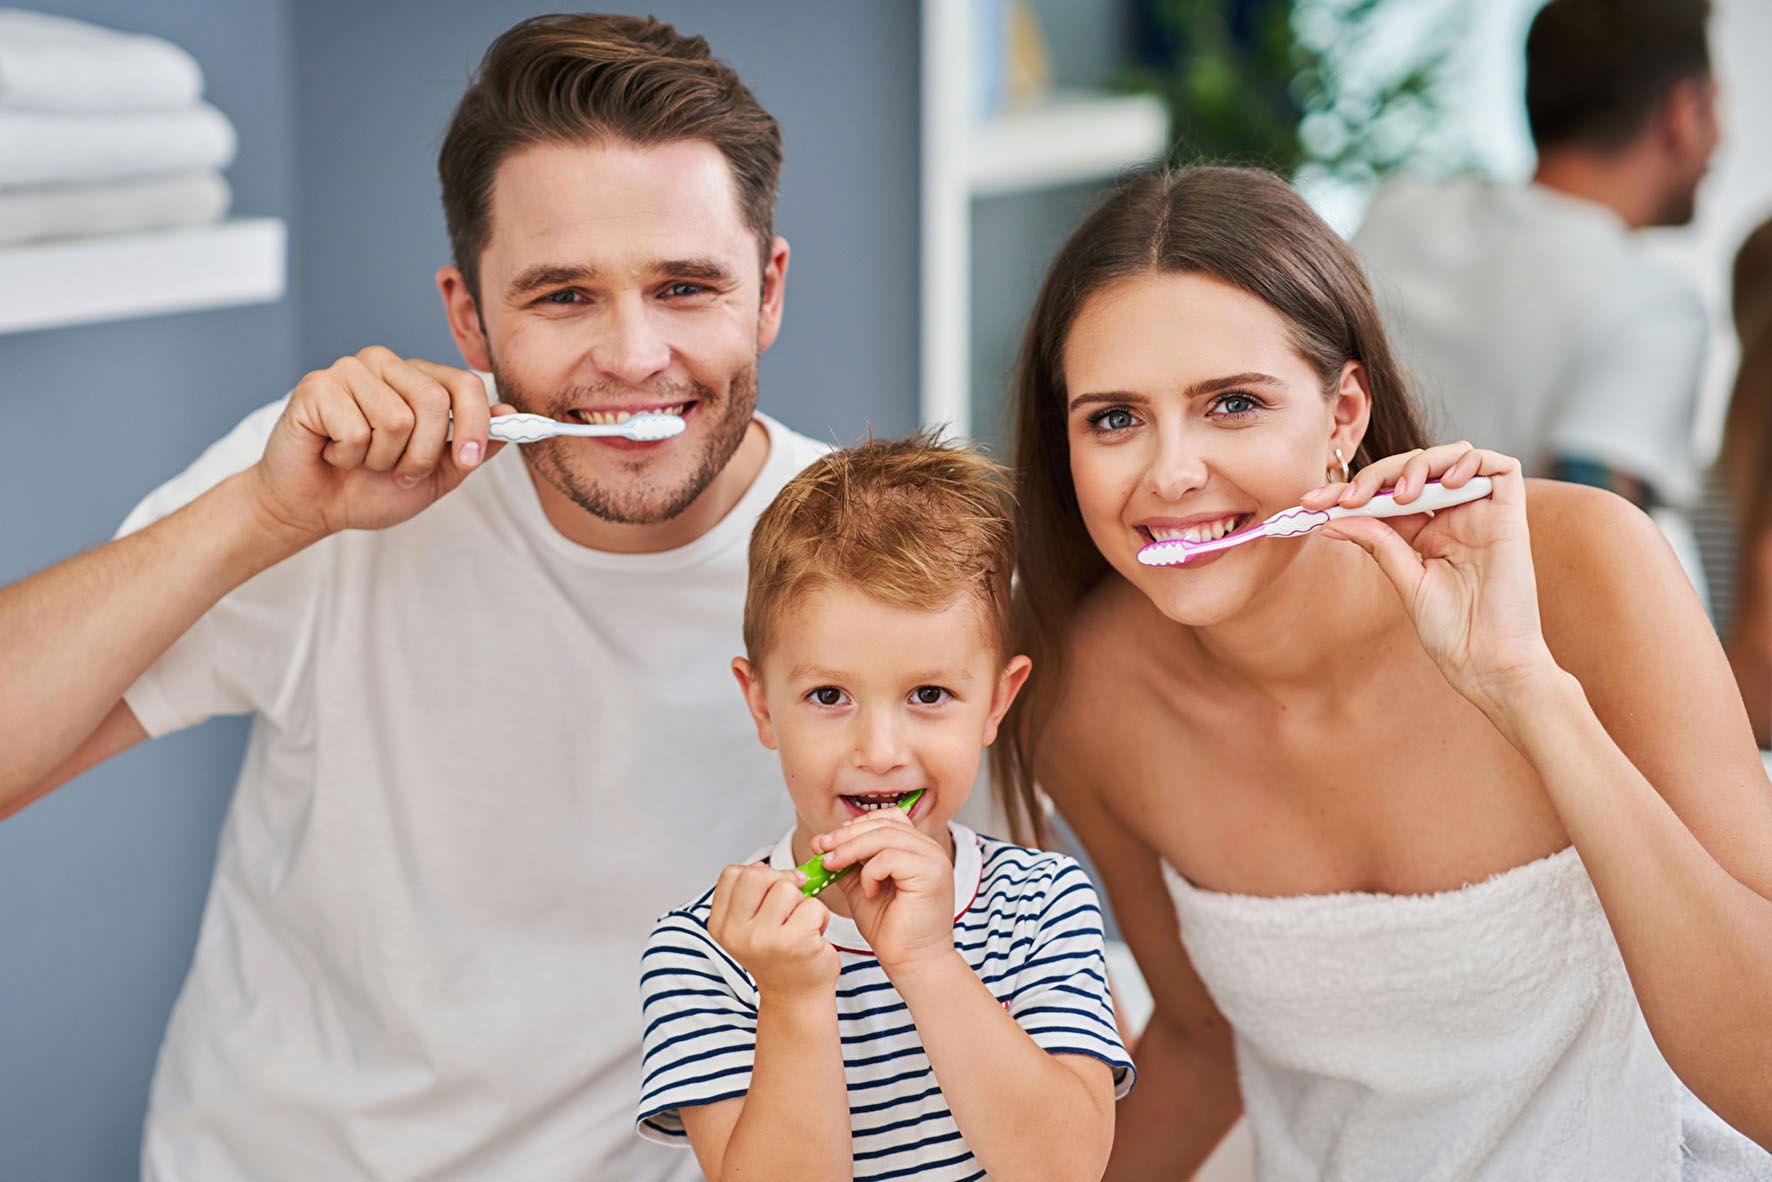 Bei der Zahnpflege mit der Zahnbürste sollte man auf eine sanfte, aber dennoch wirkungsvolle Zahncreme setzen. Zudem sollte sie kein weißendes Titandioxid mehr enthalten. Foto: djd/Aminomed/Panthermedia/macniak<br>